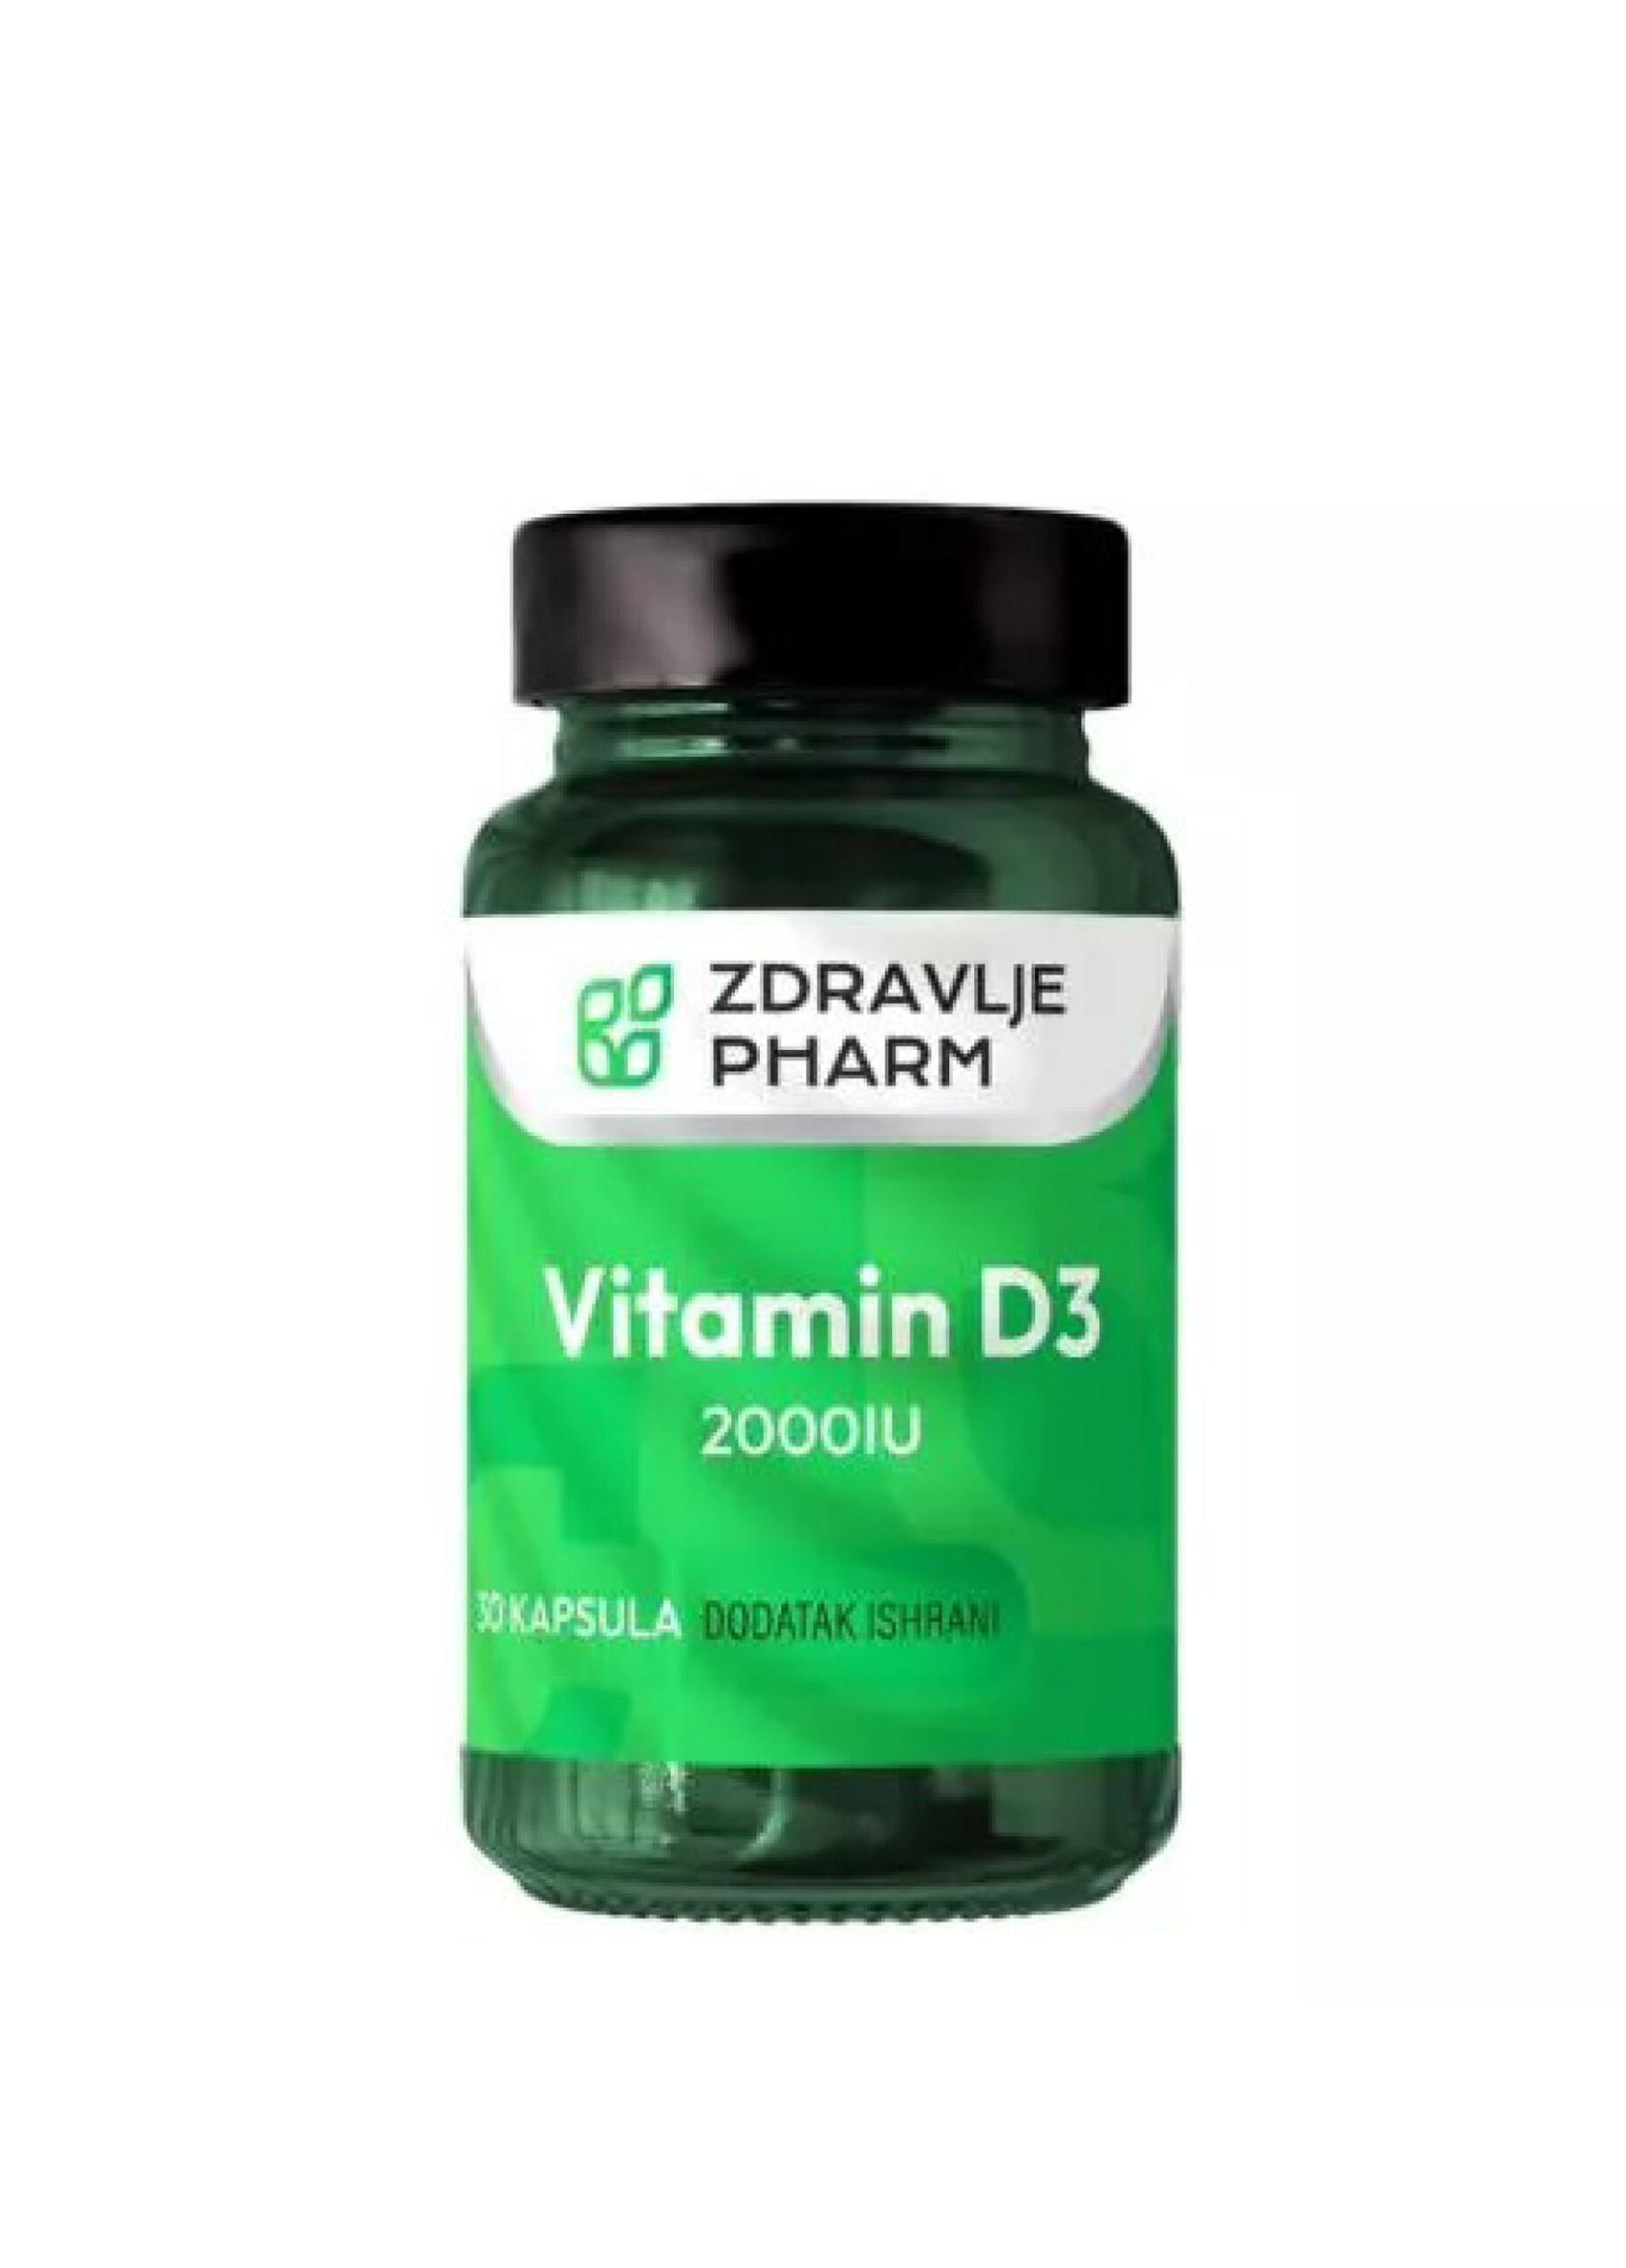 ZDRAVLJE PHARM Vitamin D3 2000 IU